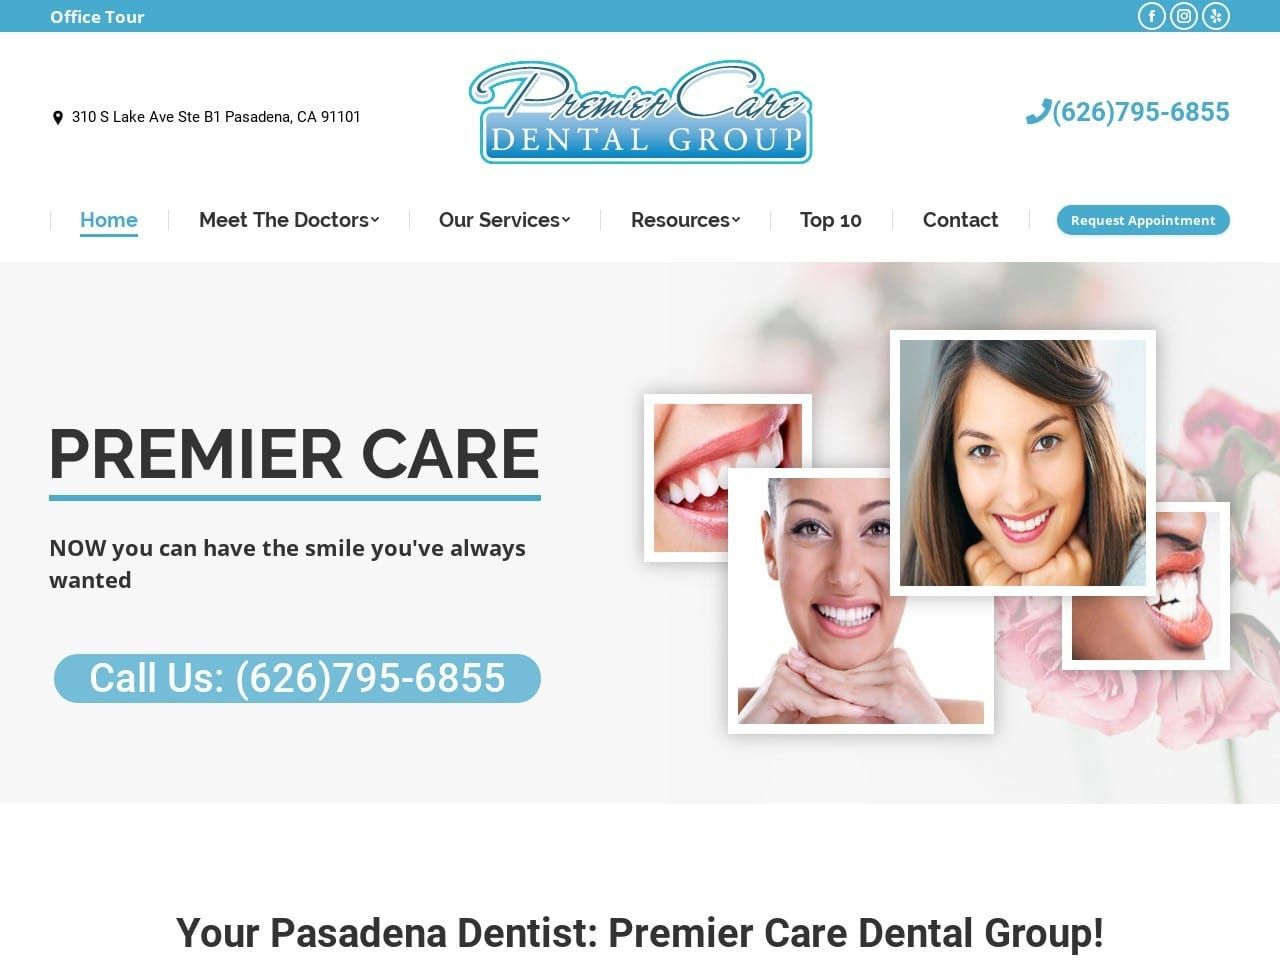 Premier Care Dental Group Website Screenshot from premiercaredentalgroup.com